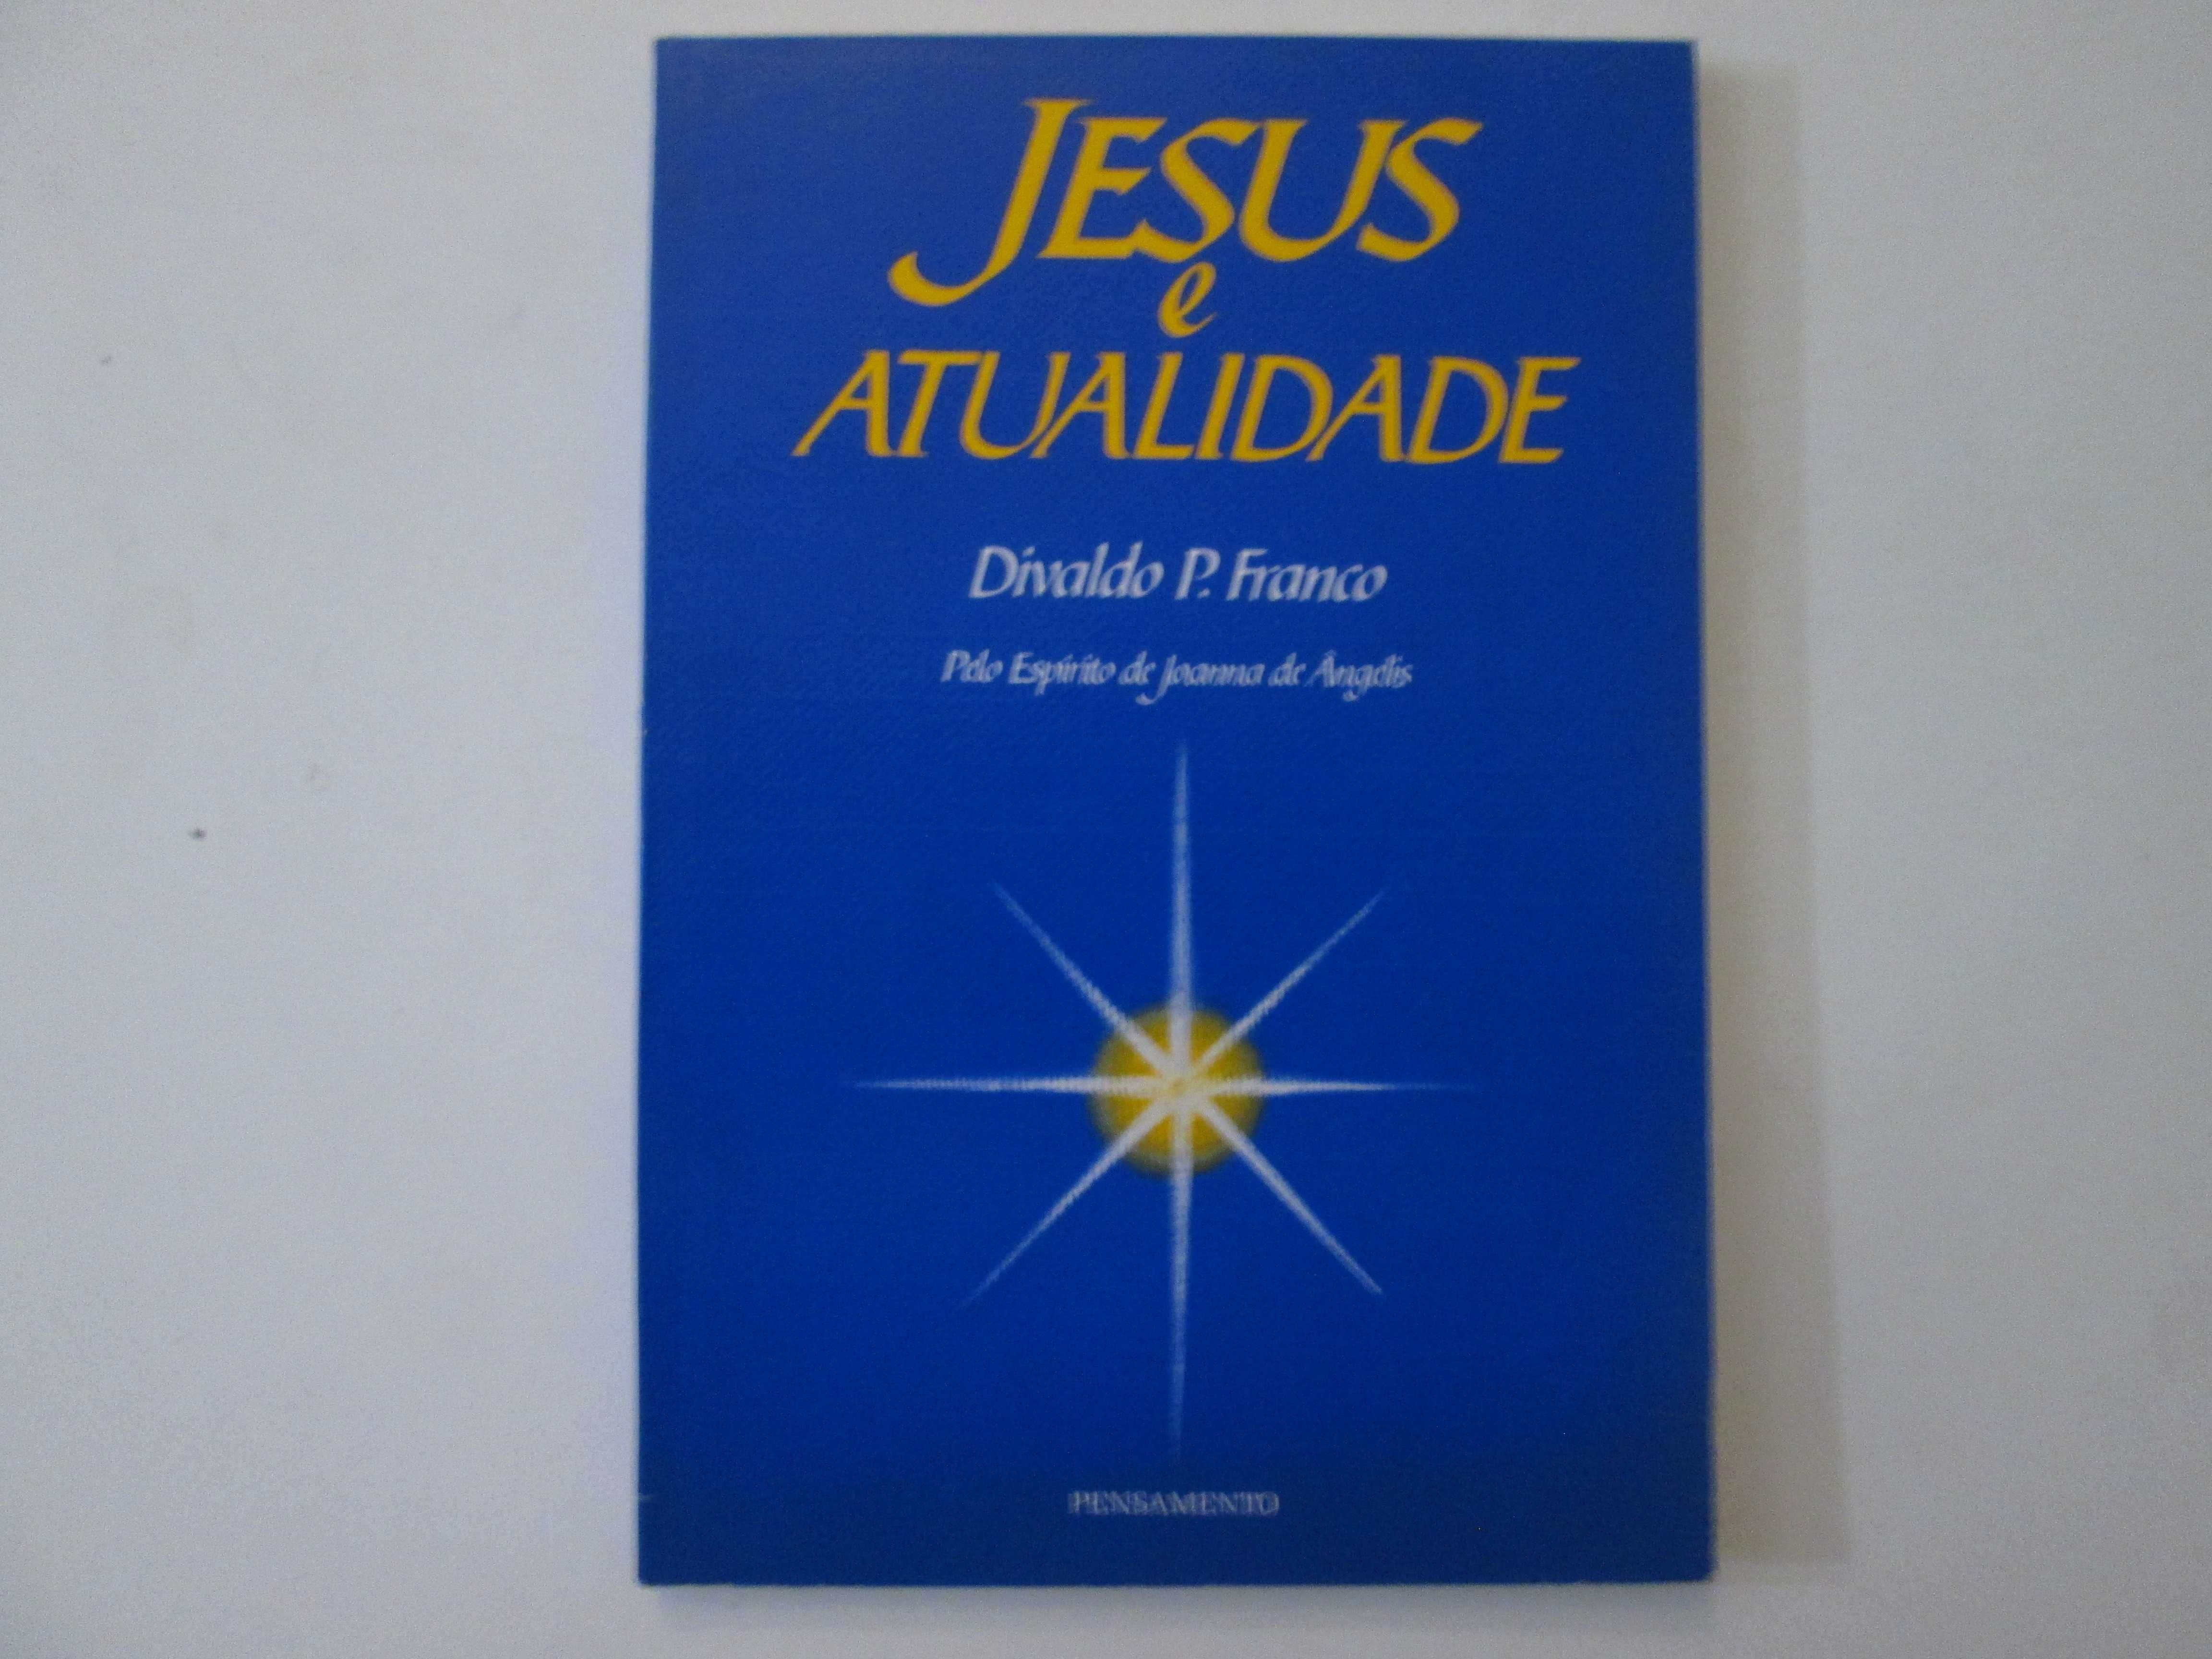 Jesus e atualidade- Divaldo Pereira Franco